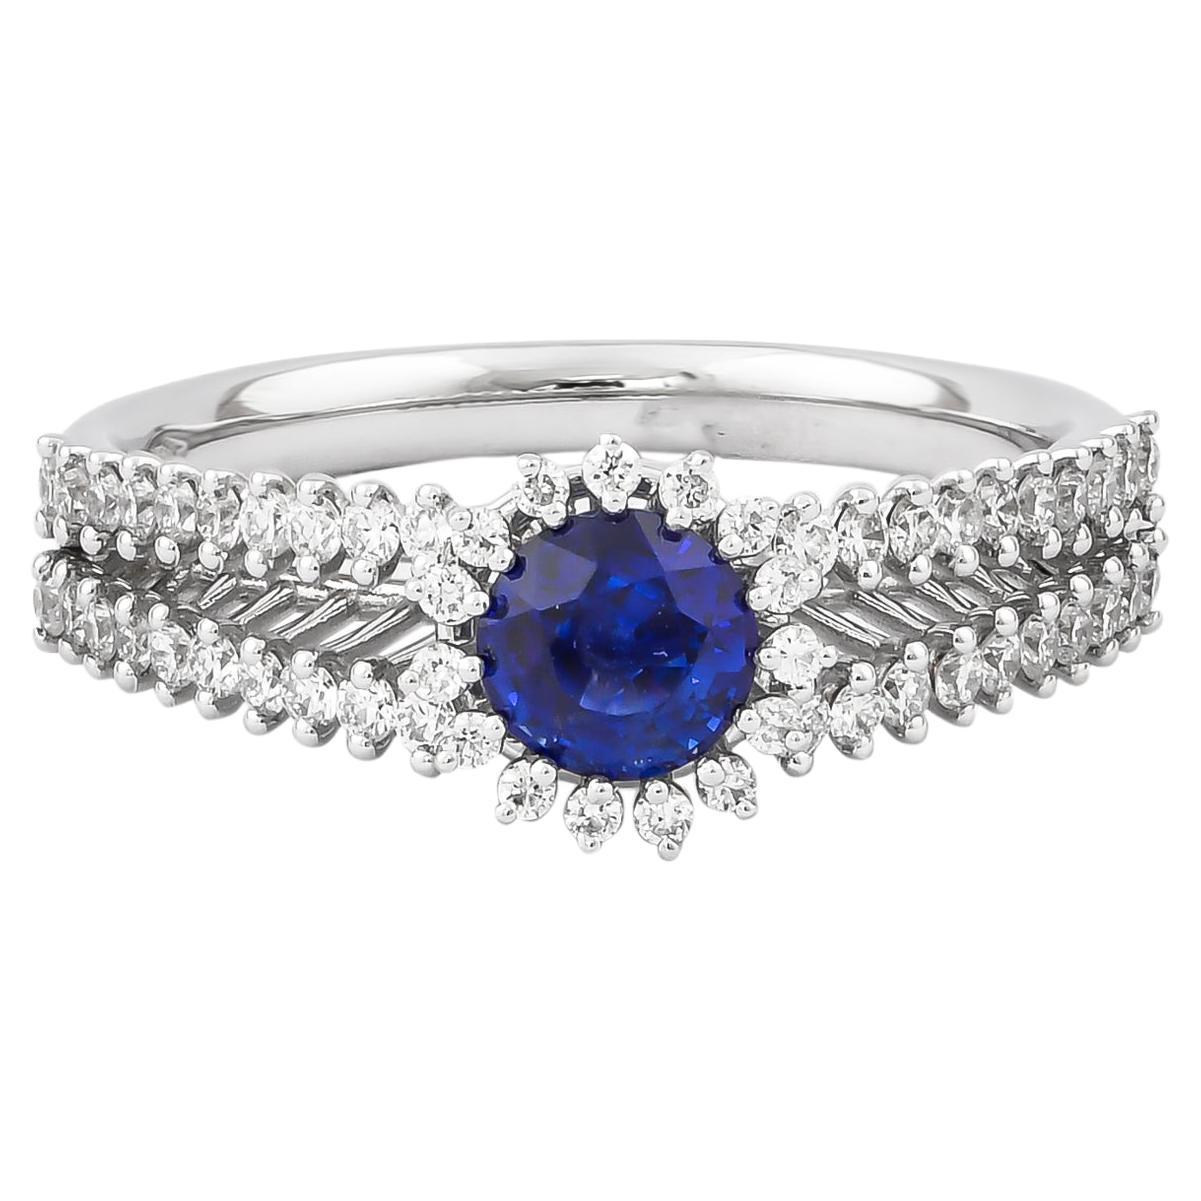 0.74 Carat Blue Sapphire Ring in 18 Karat White Gold